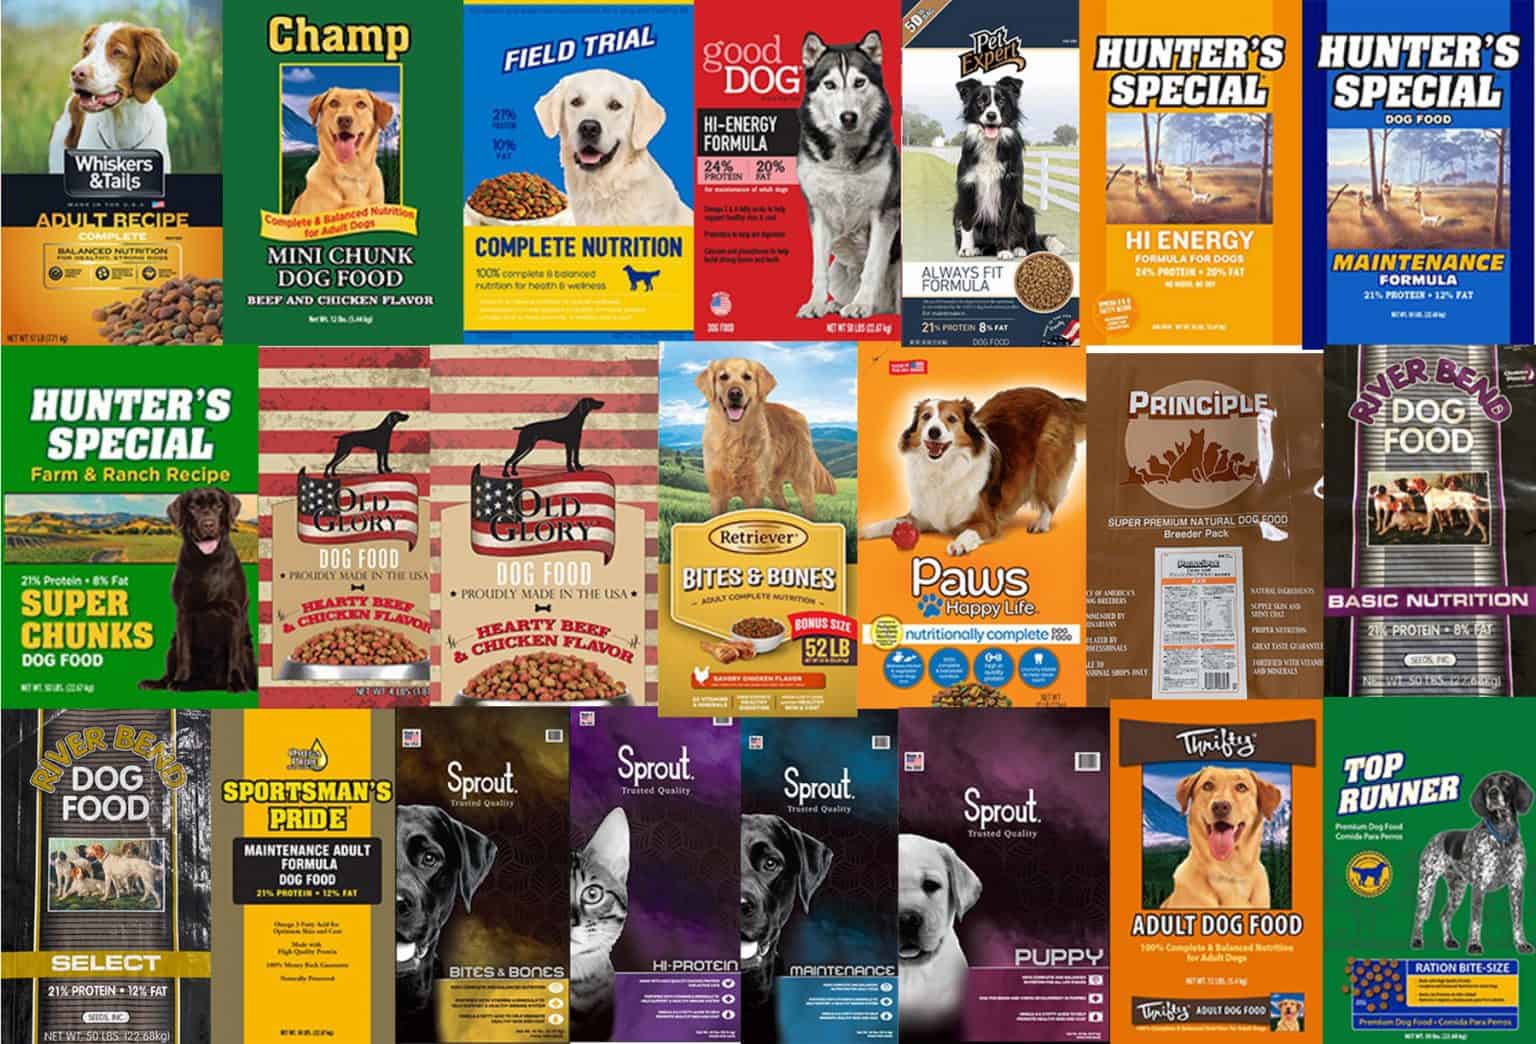 RECALL ALERT 21 Pet Foods Across Multiple Brands Recalled over